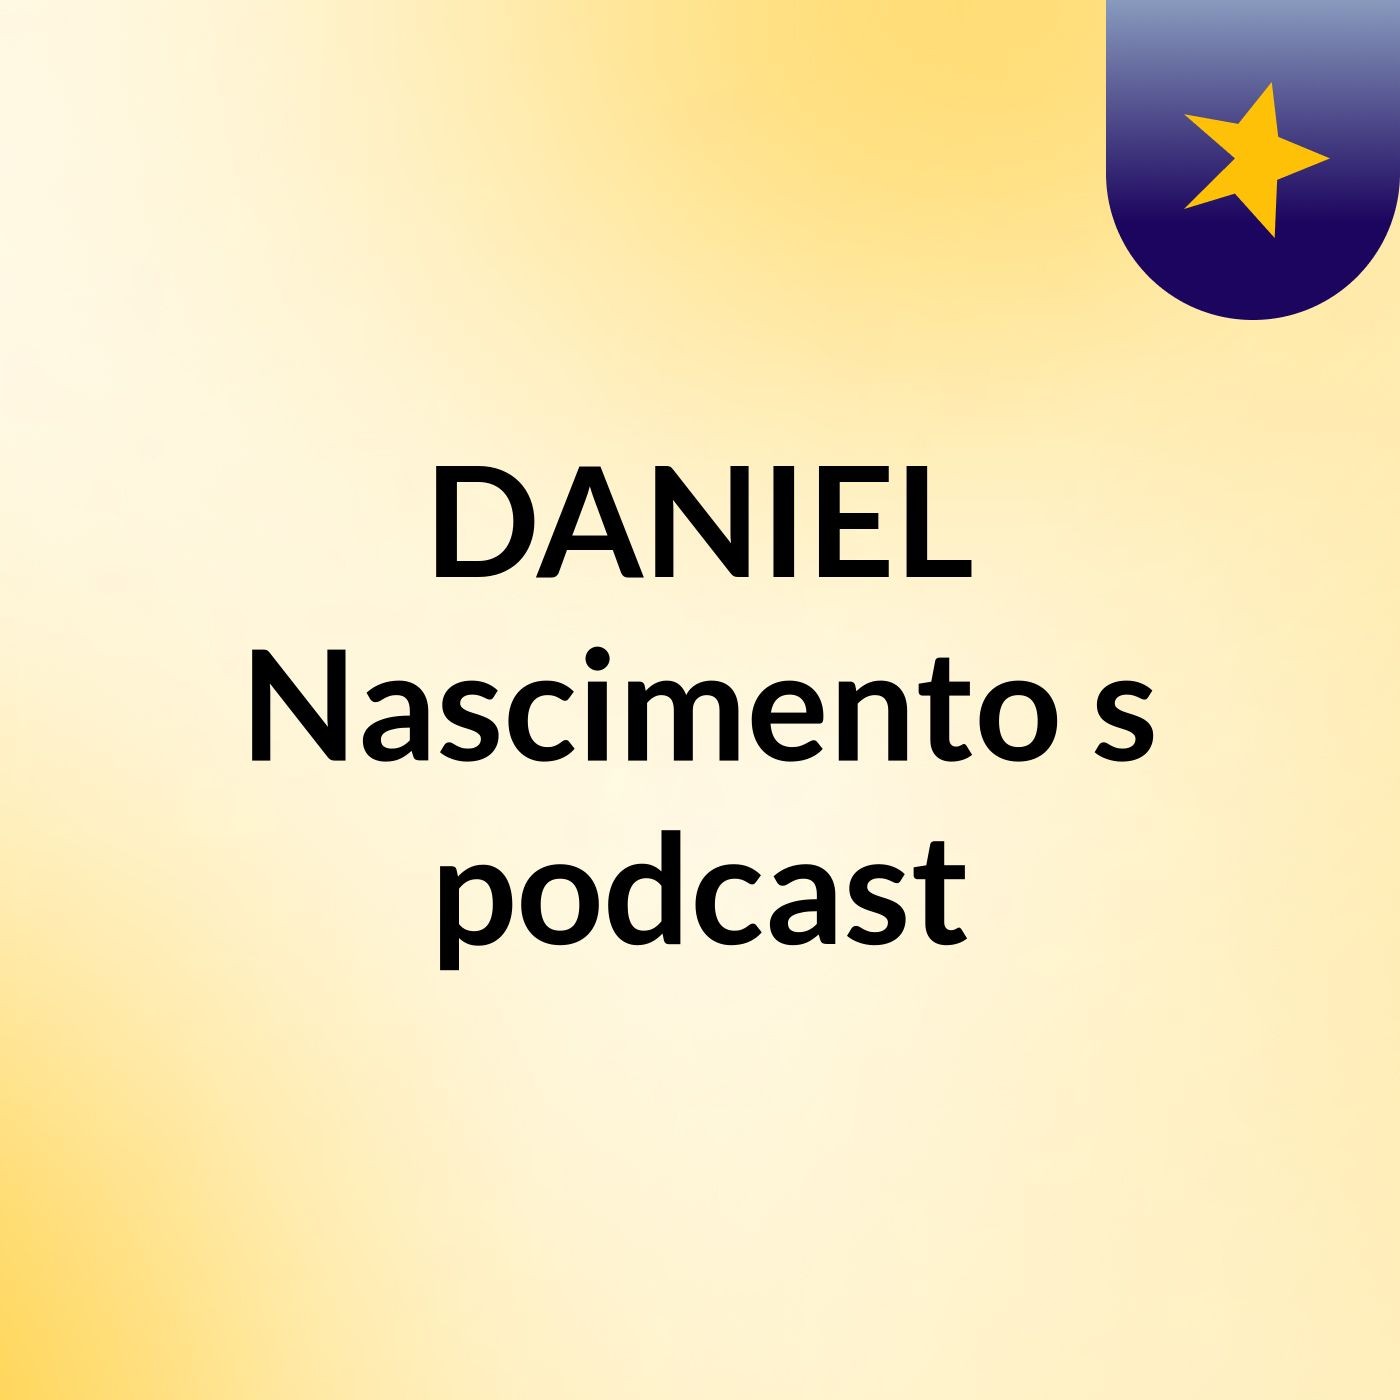 Família Formação Da Sociedade J Morais -Pe. DANIEL Nascimento's podcast